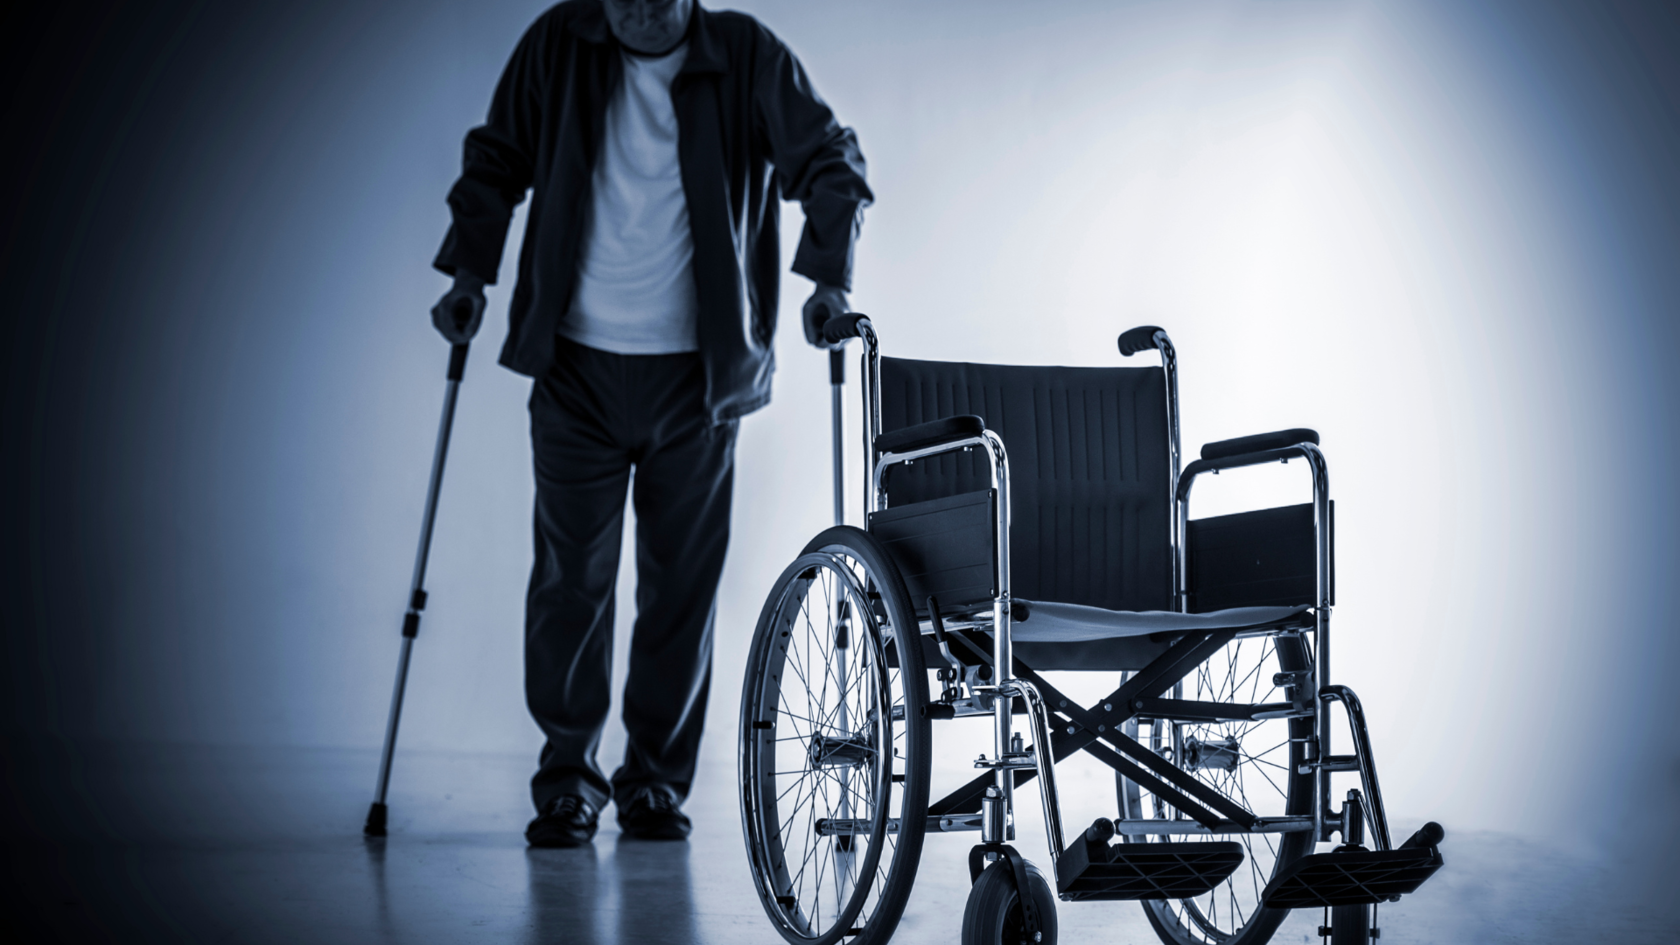 Дисабилити сайт для инвалидов. Инвалид. Фотосессия инвалидов. Инвалиды с нарушением опорно-двигательного аппарата. Инвалид и инвалидность.